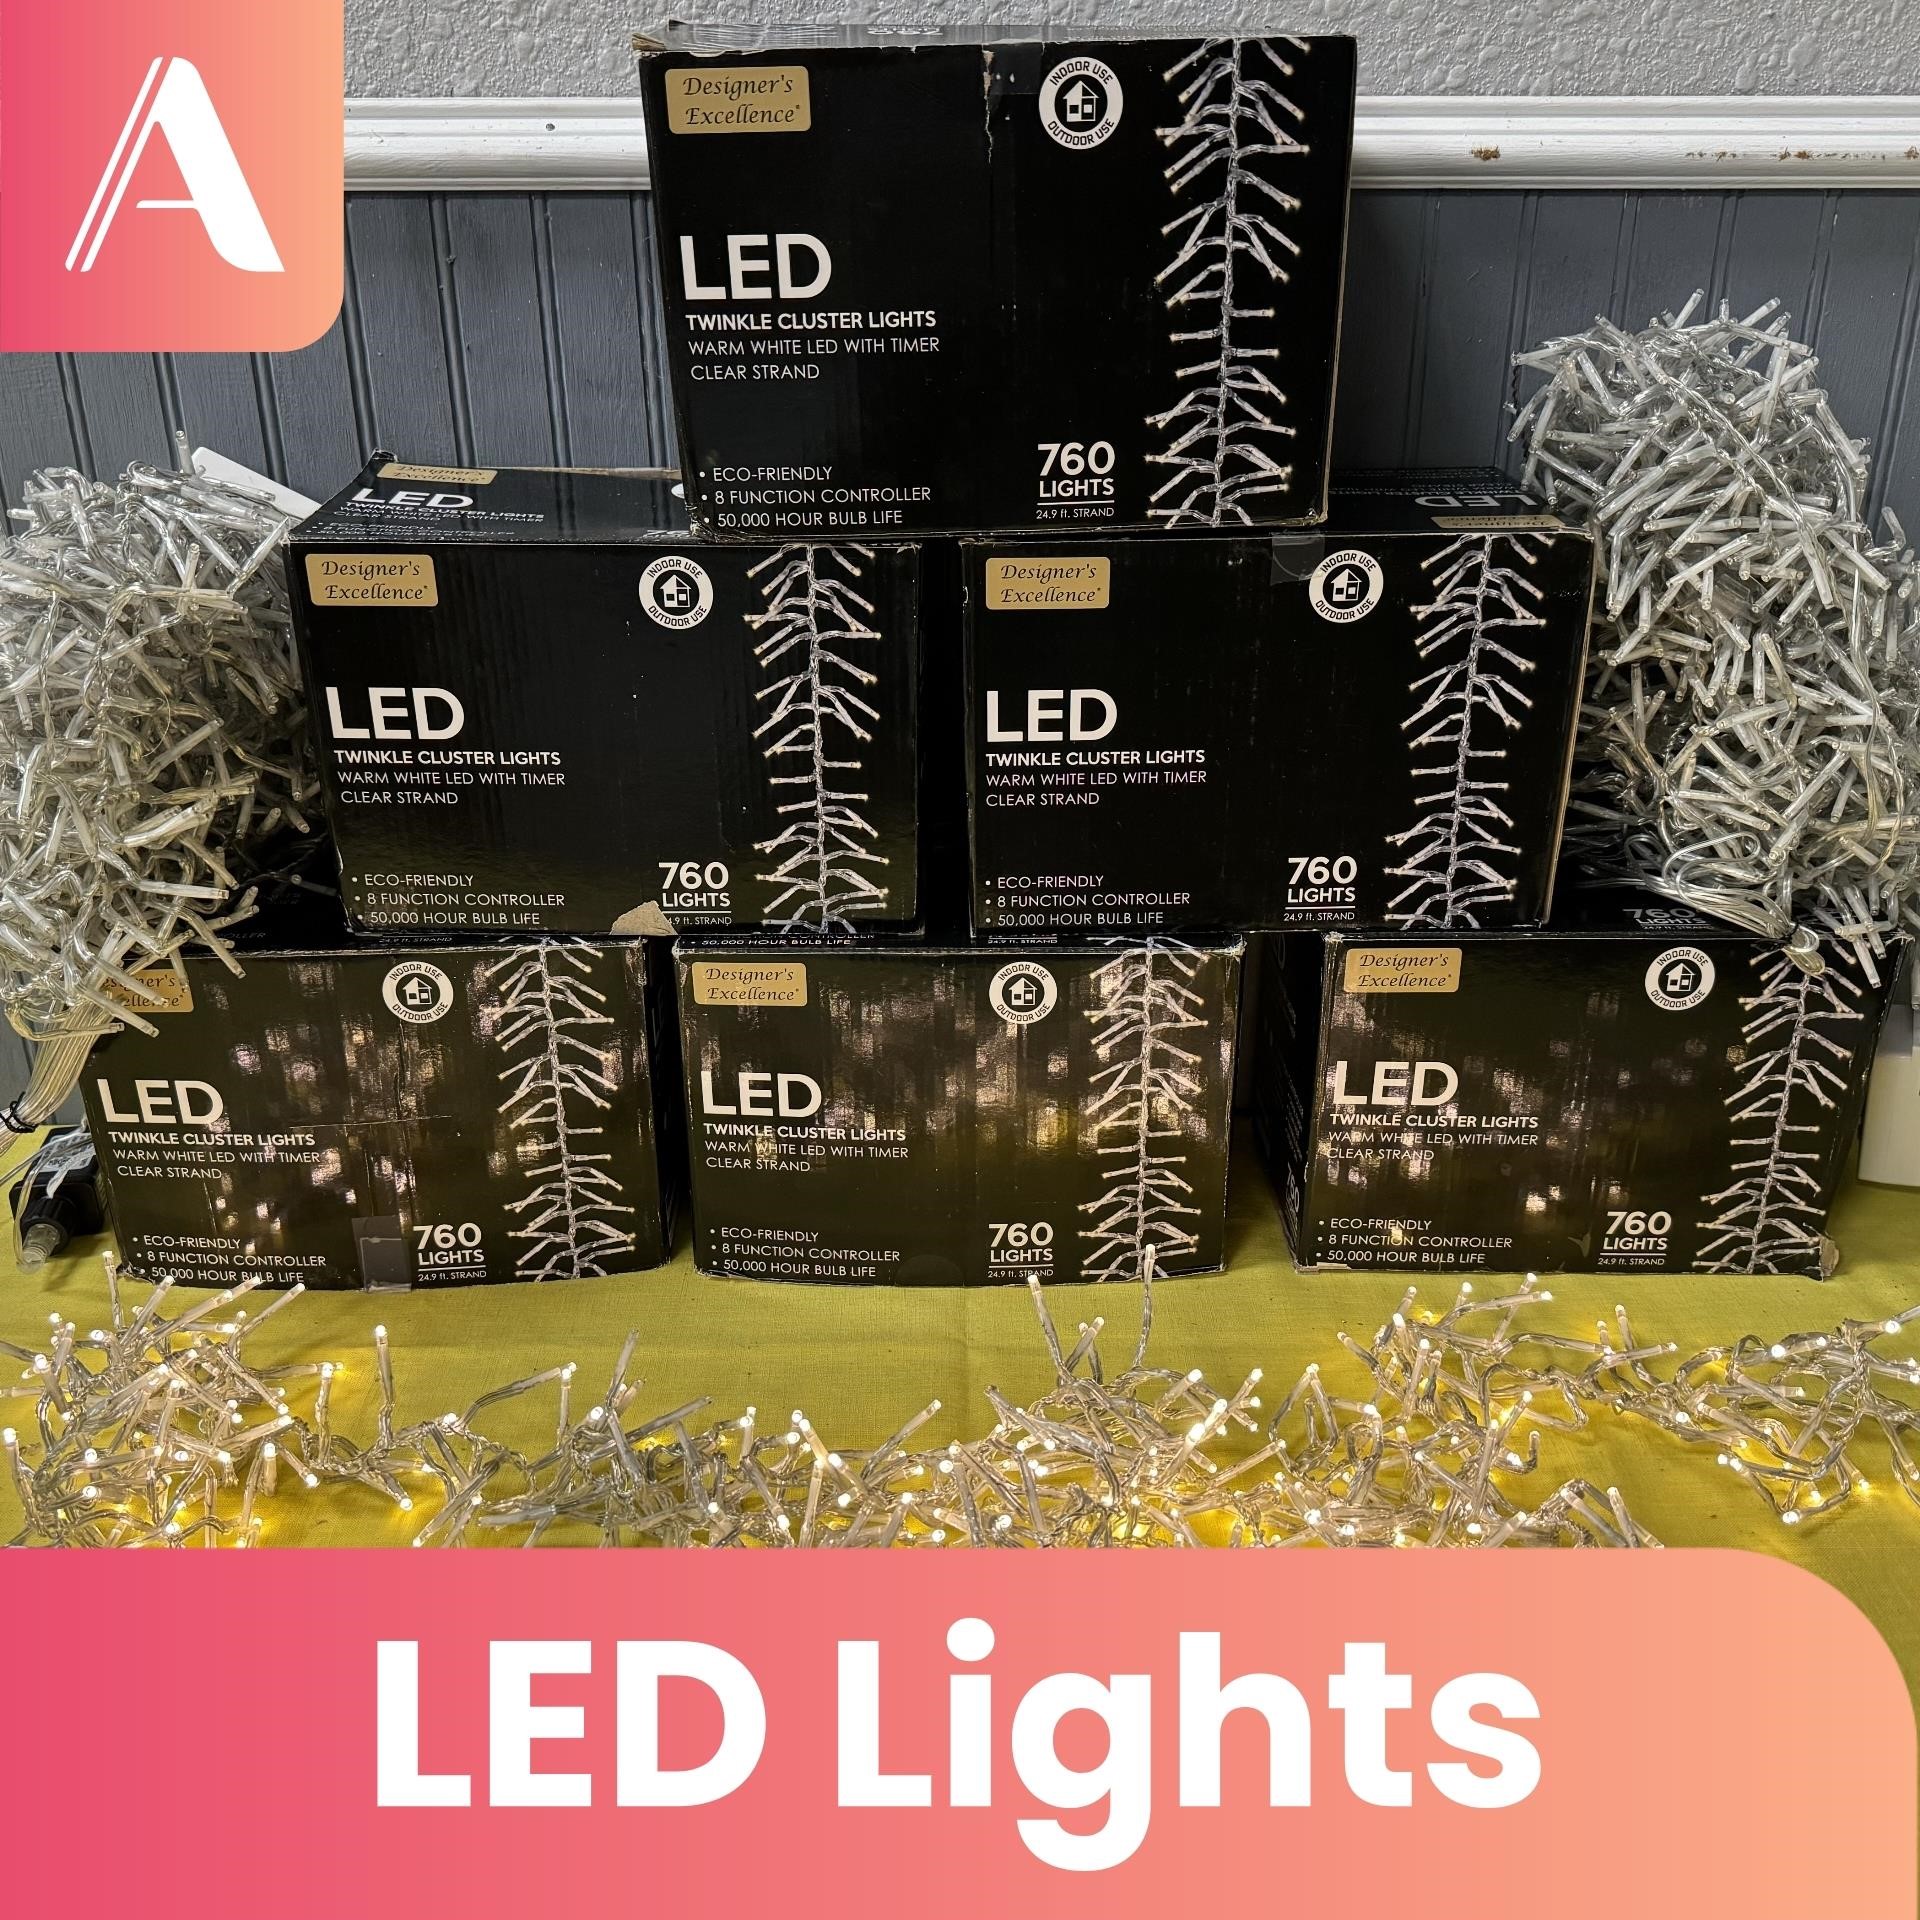 Designer's Excellence LED Lights